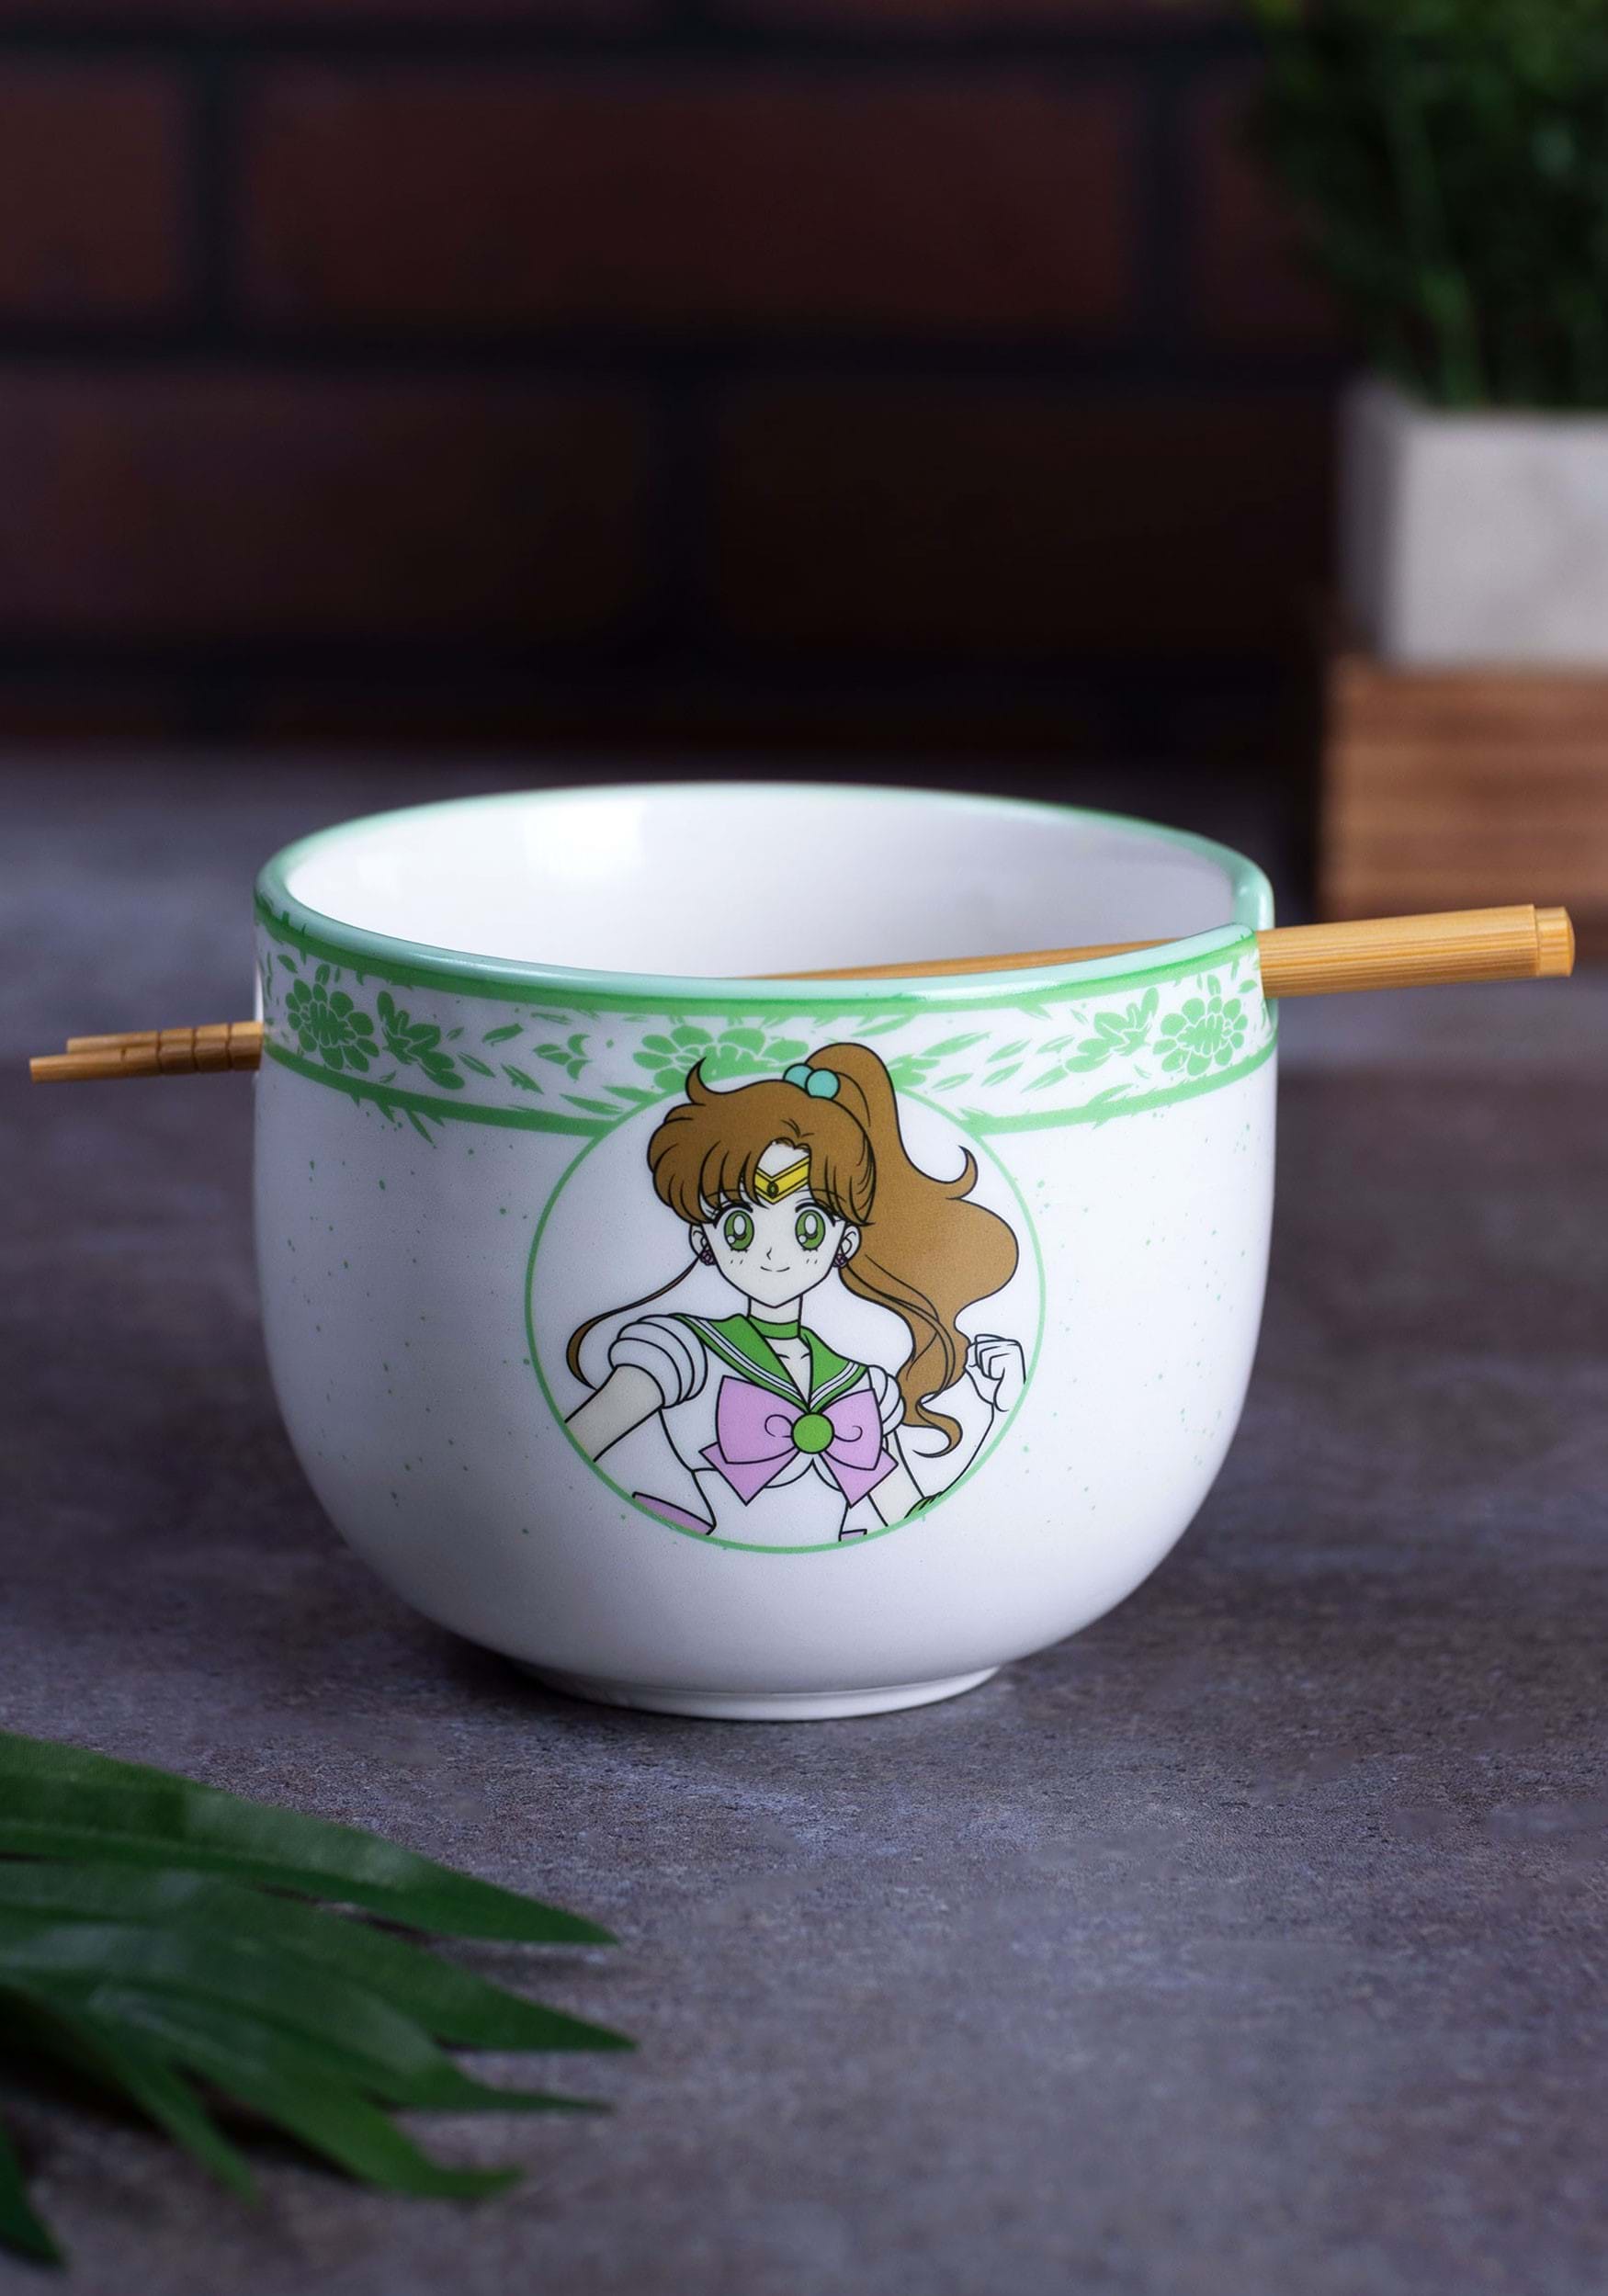 Anime chibi holding bowl of pasta on Craiyon